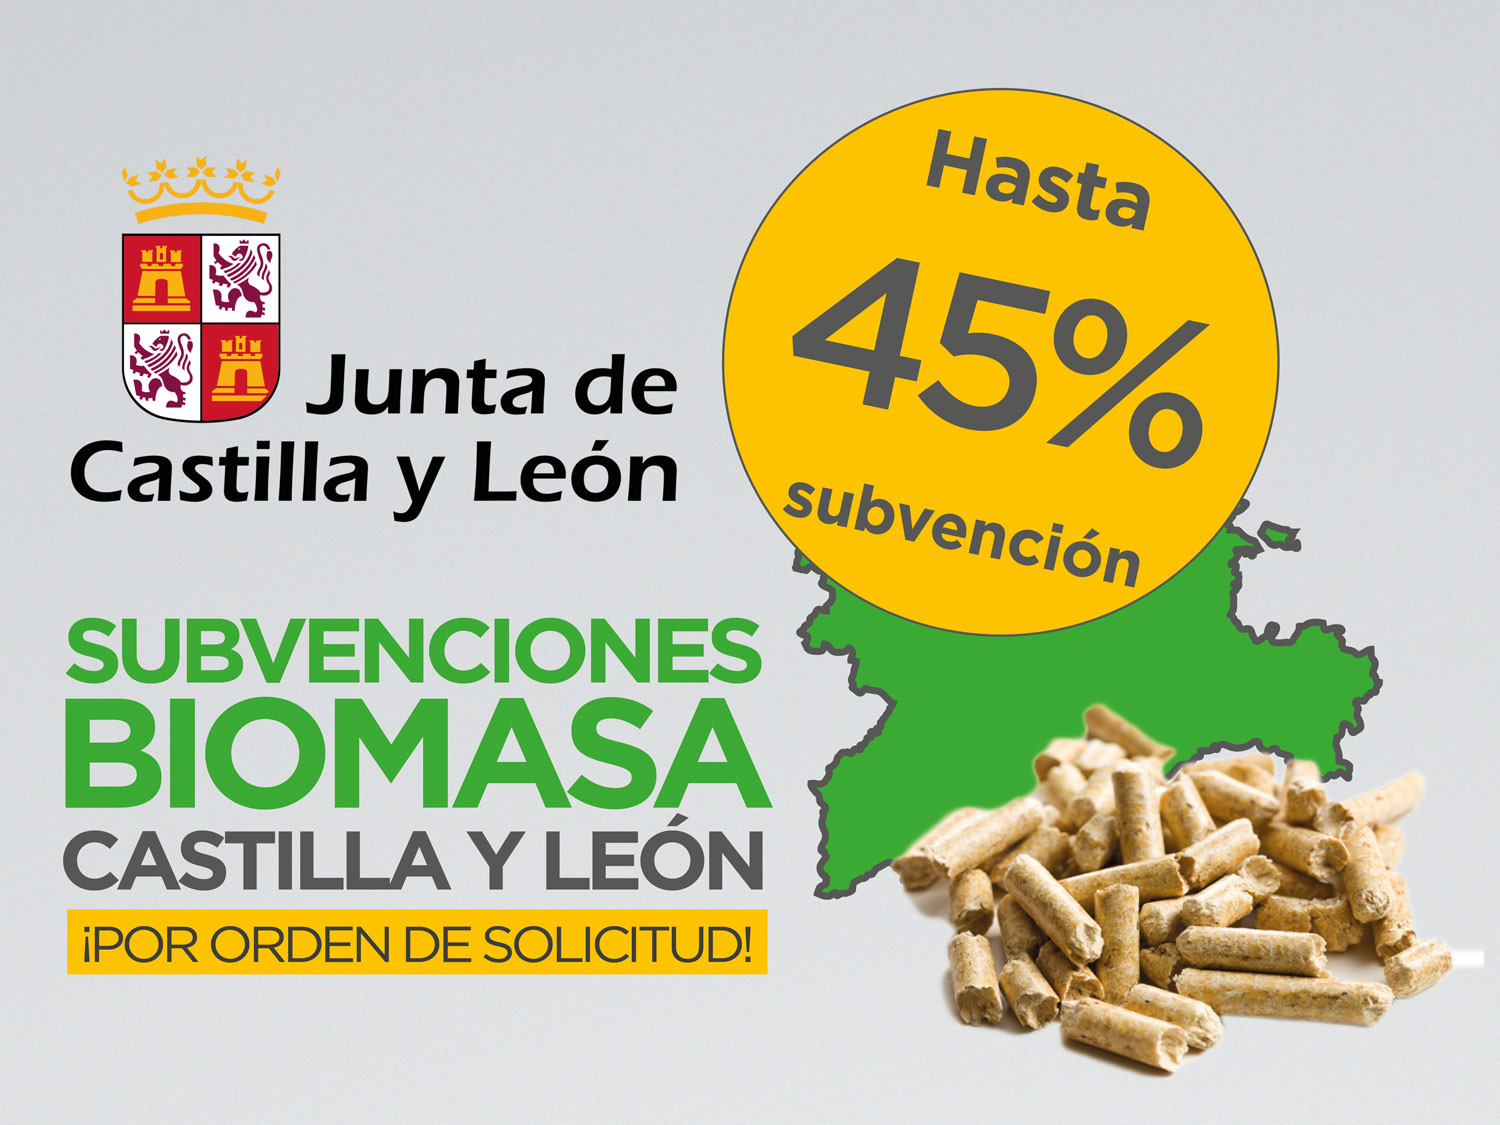 Subvenciones biomasa Castilla y León